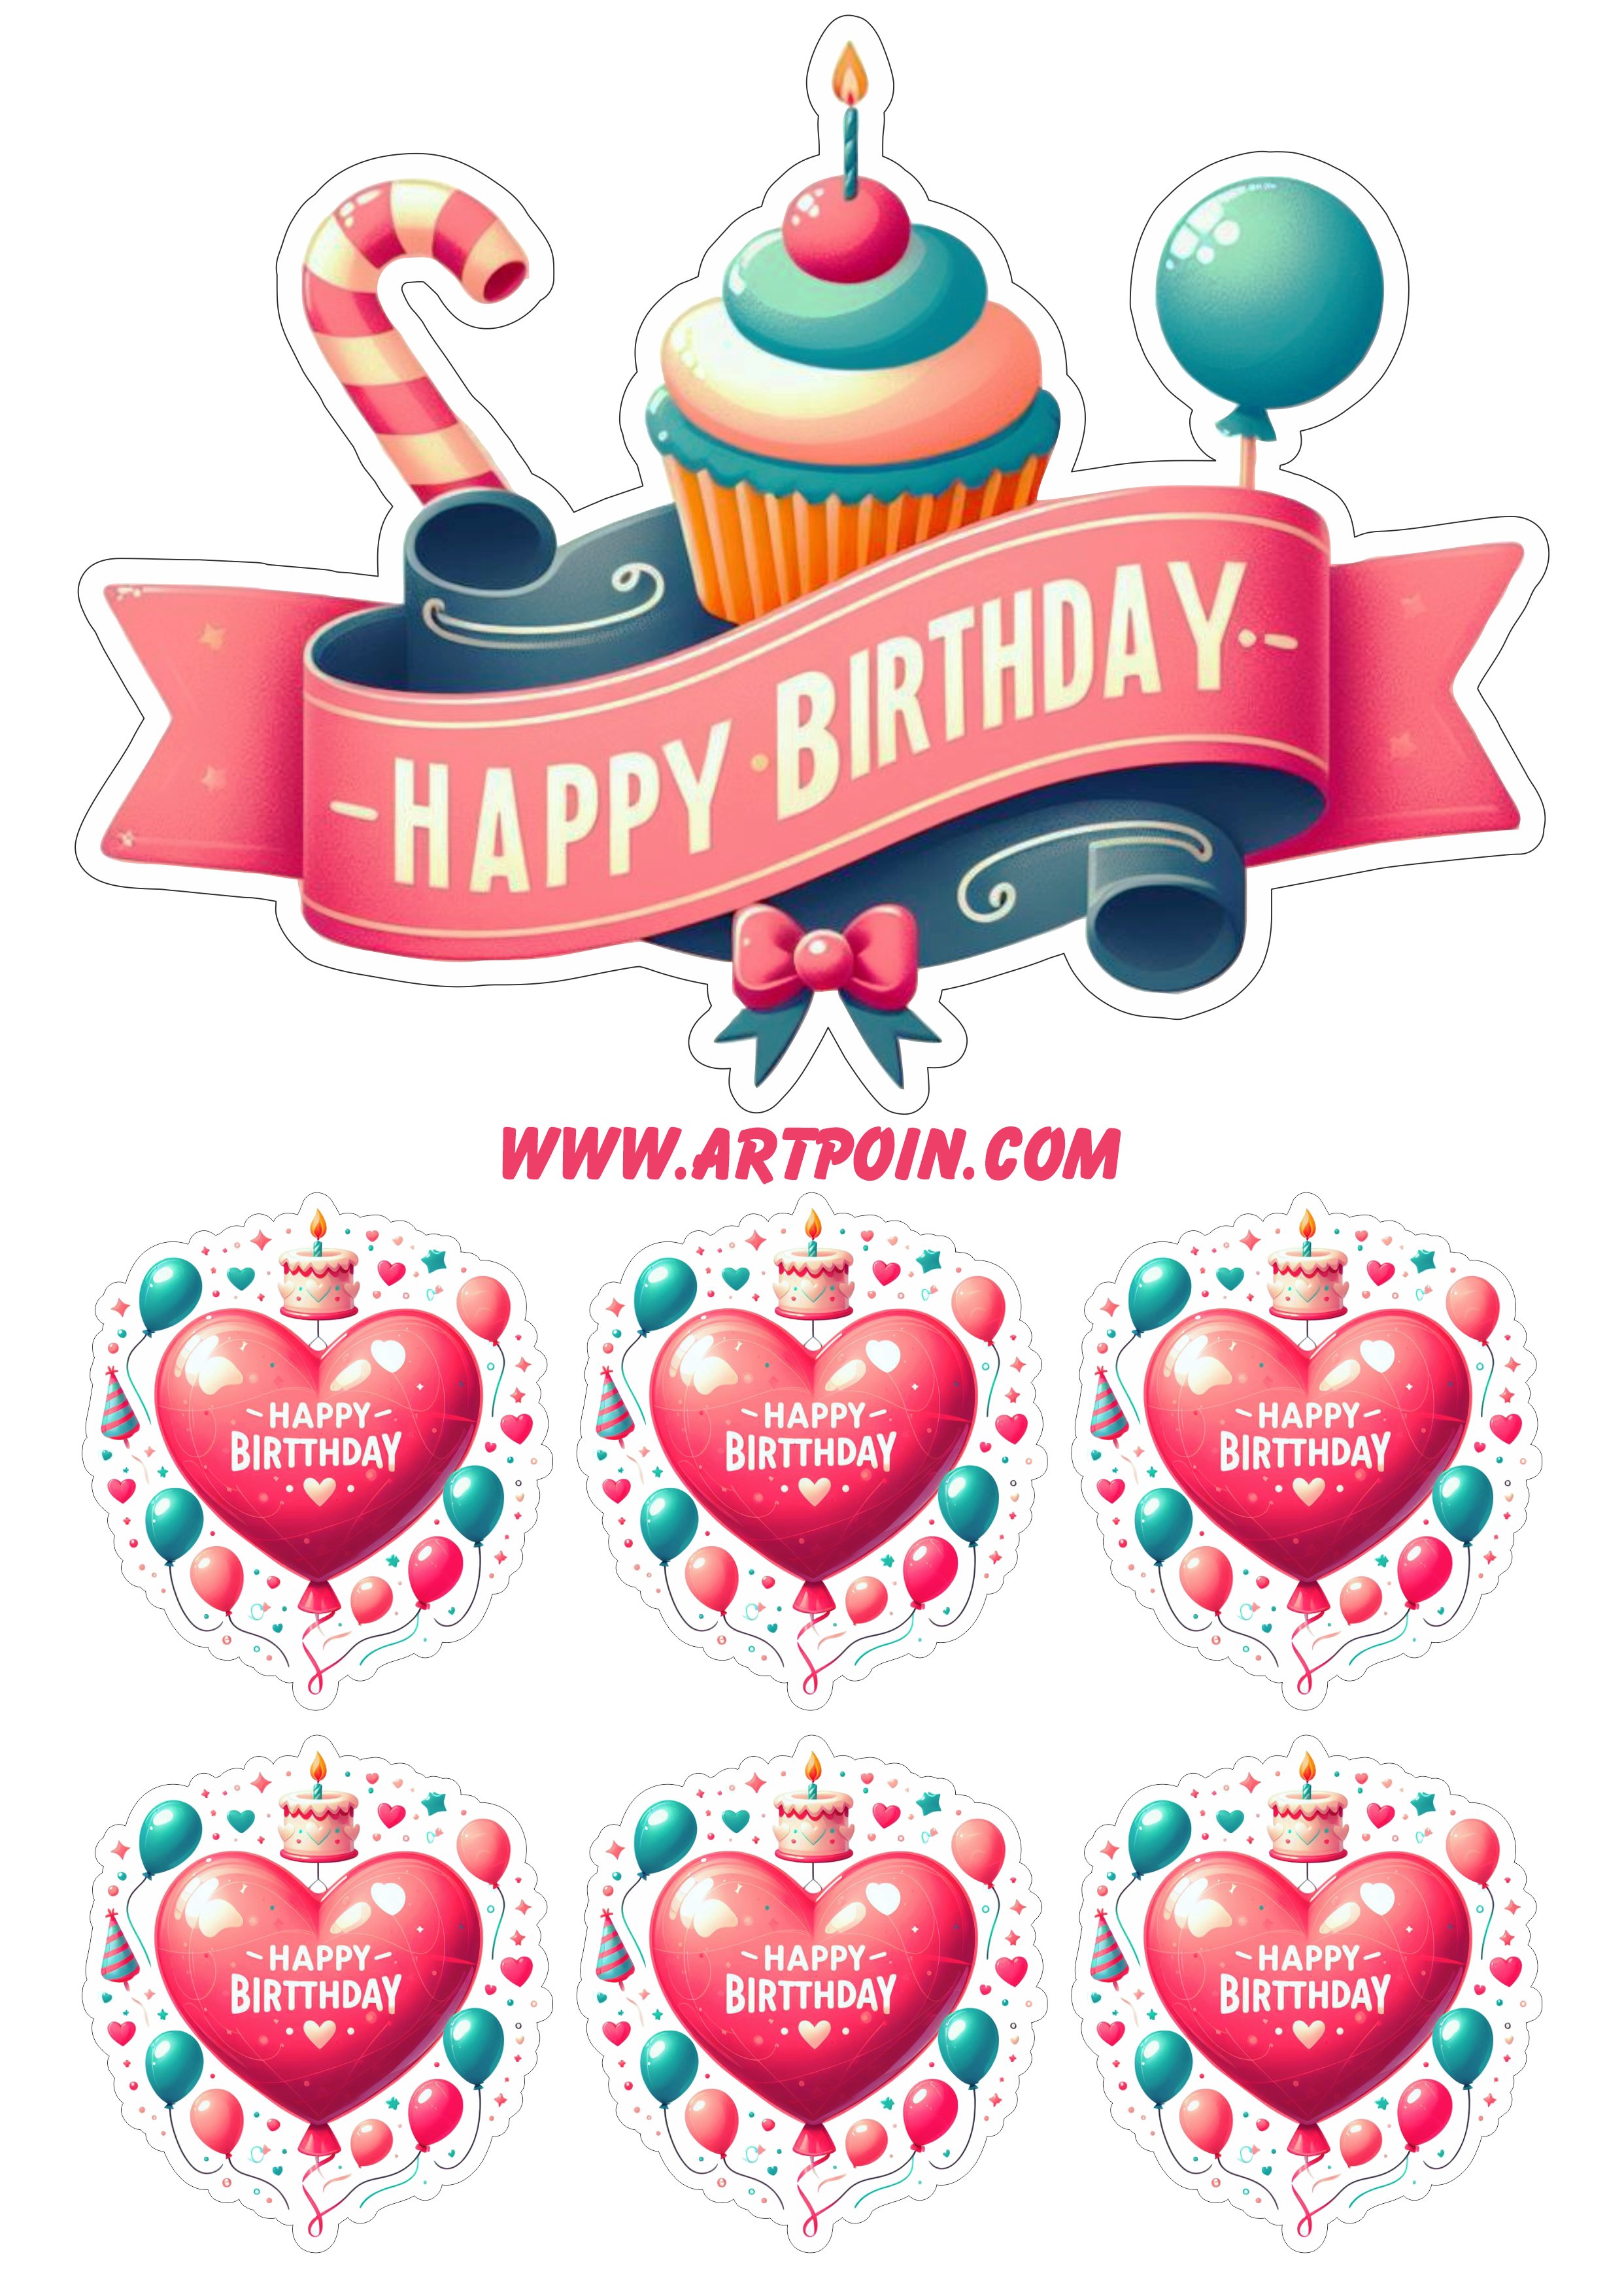 Happy birthday topo de bolo para festa de aniversário corações balões png